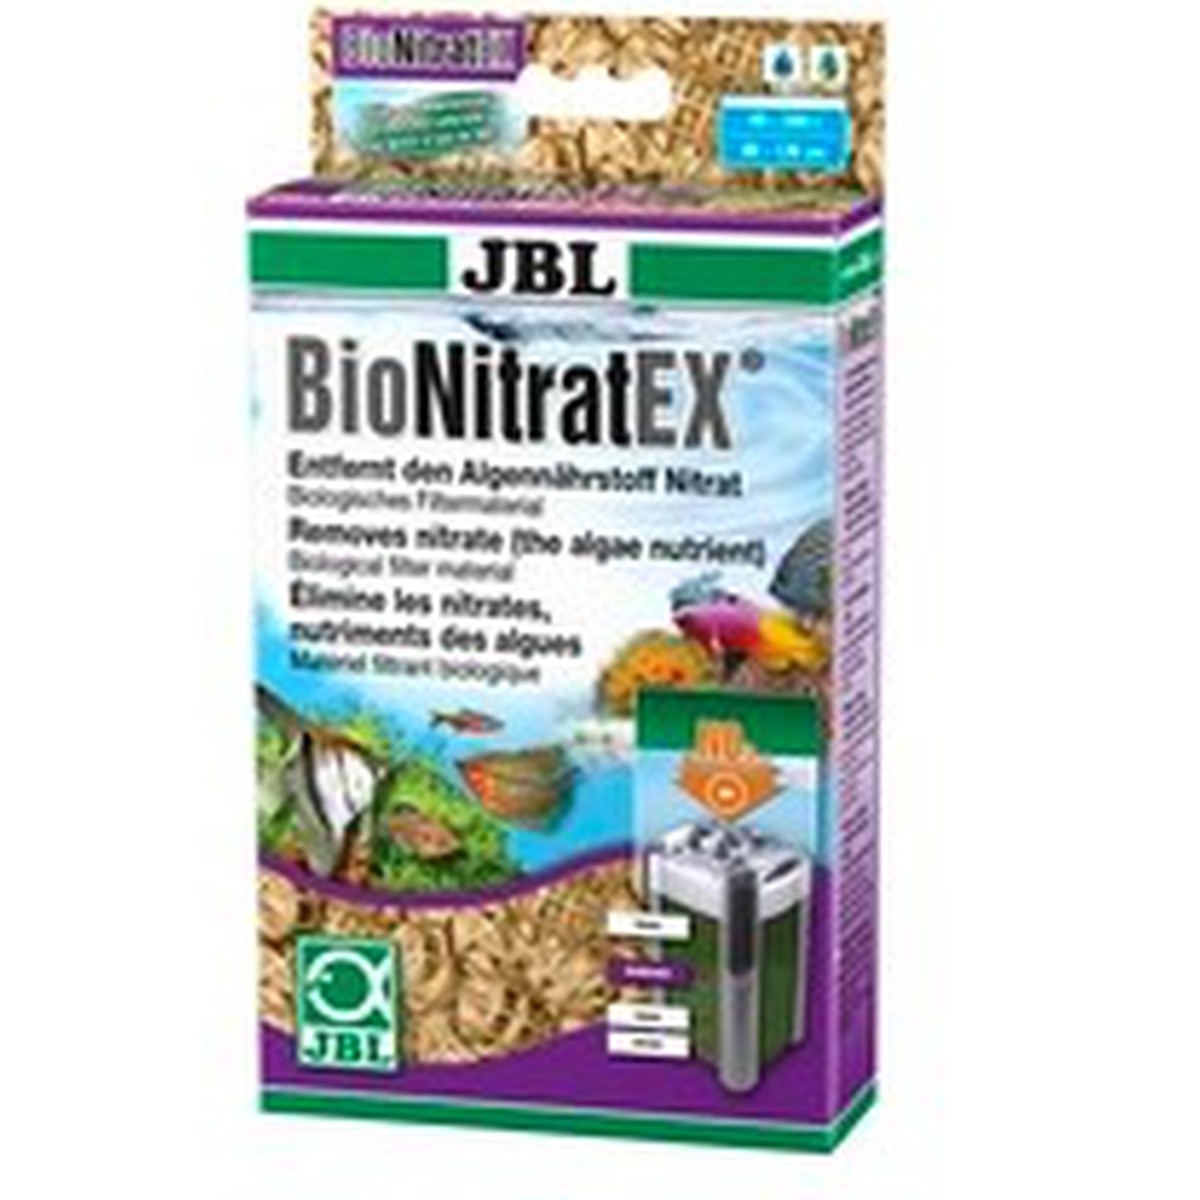   JBL BioNitratEx NEW  